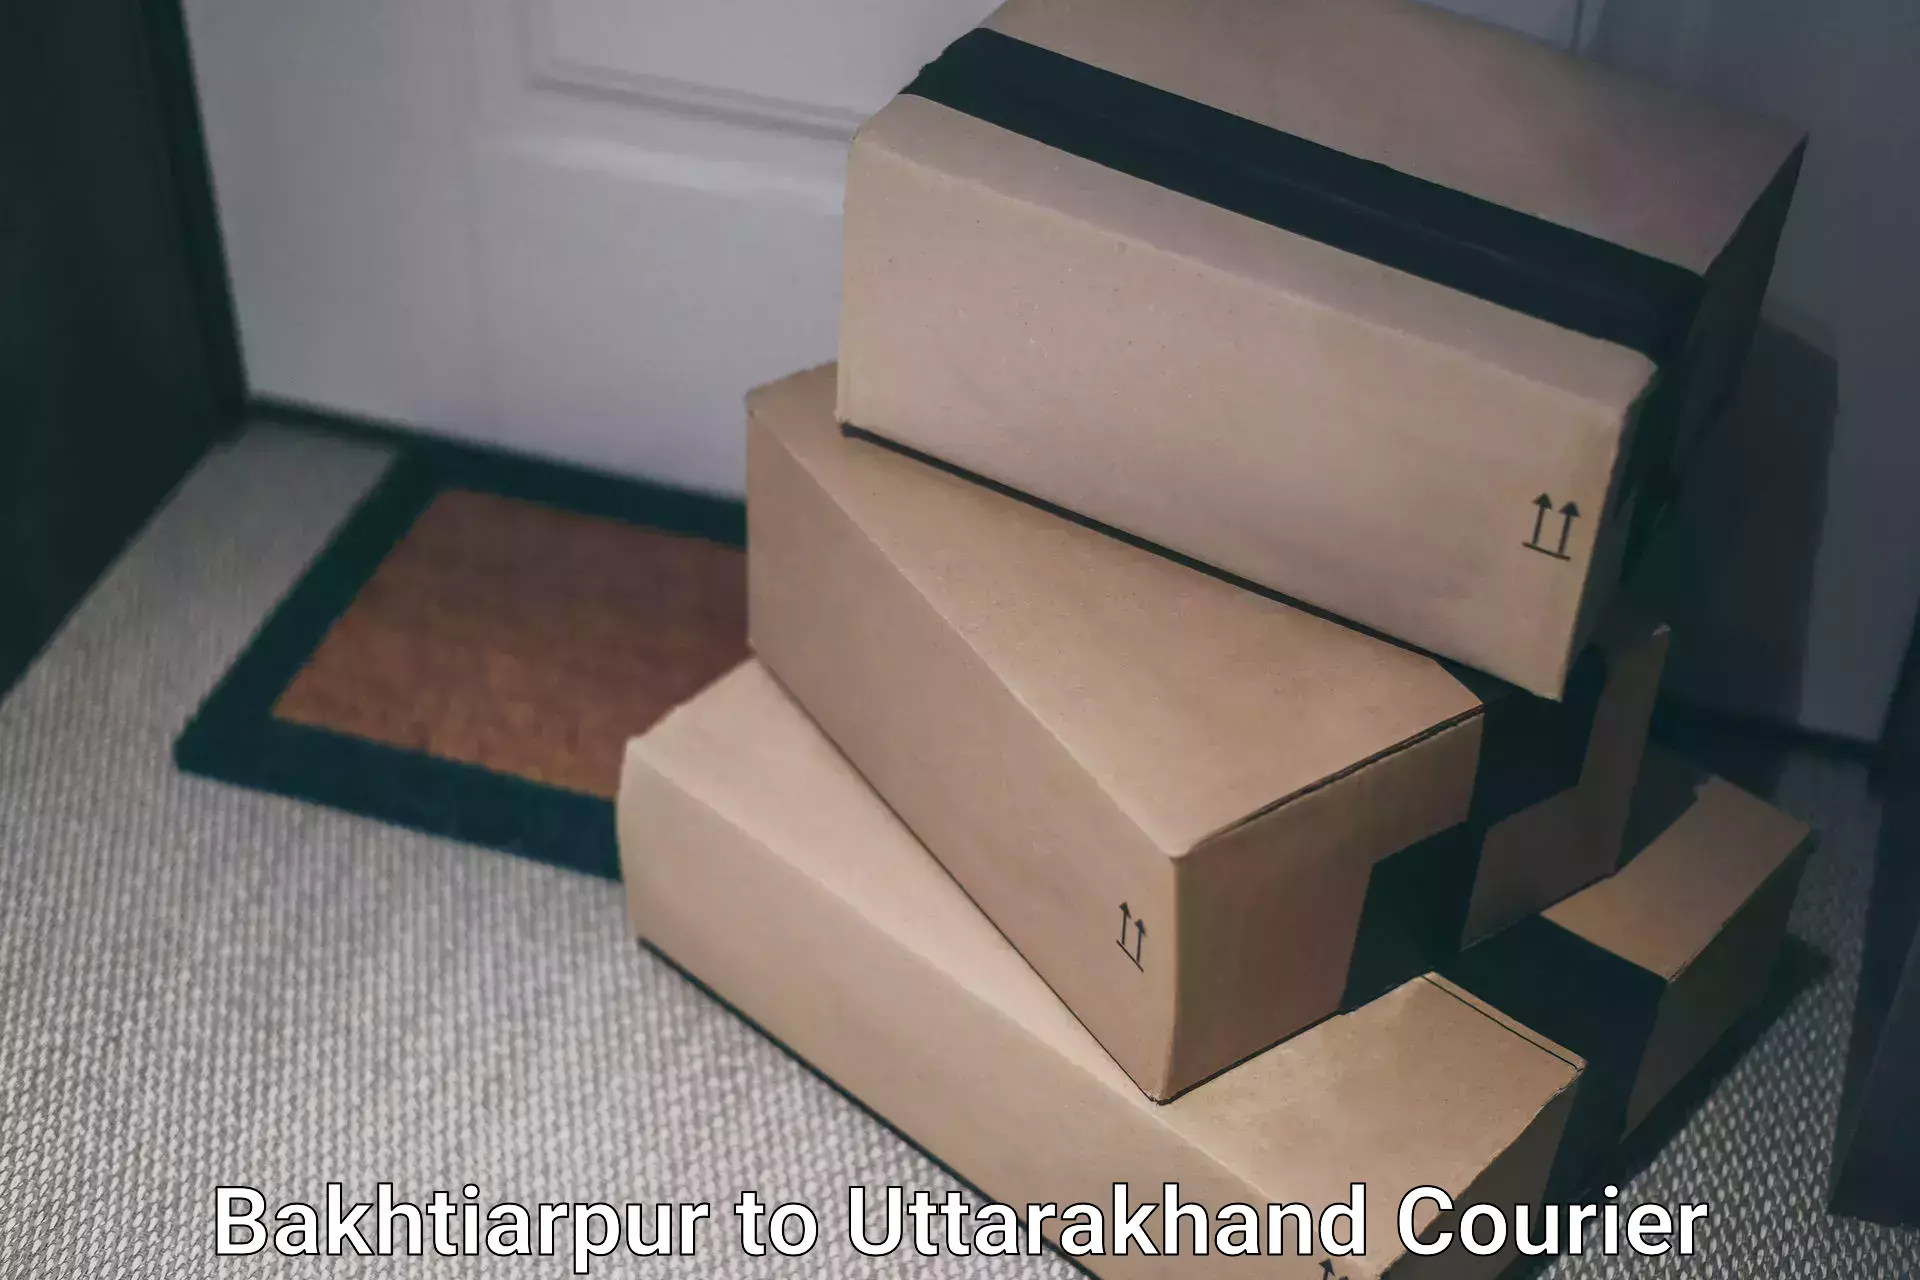 User-friendly delivery service Bakhtiarpur to Uttarakhand